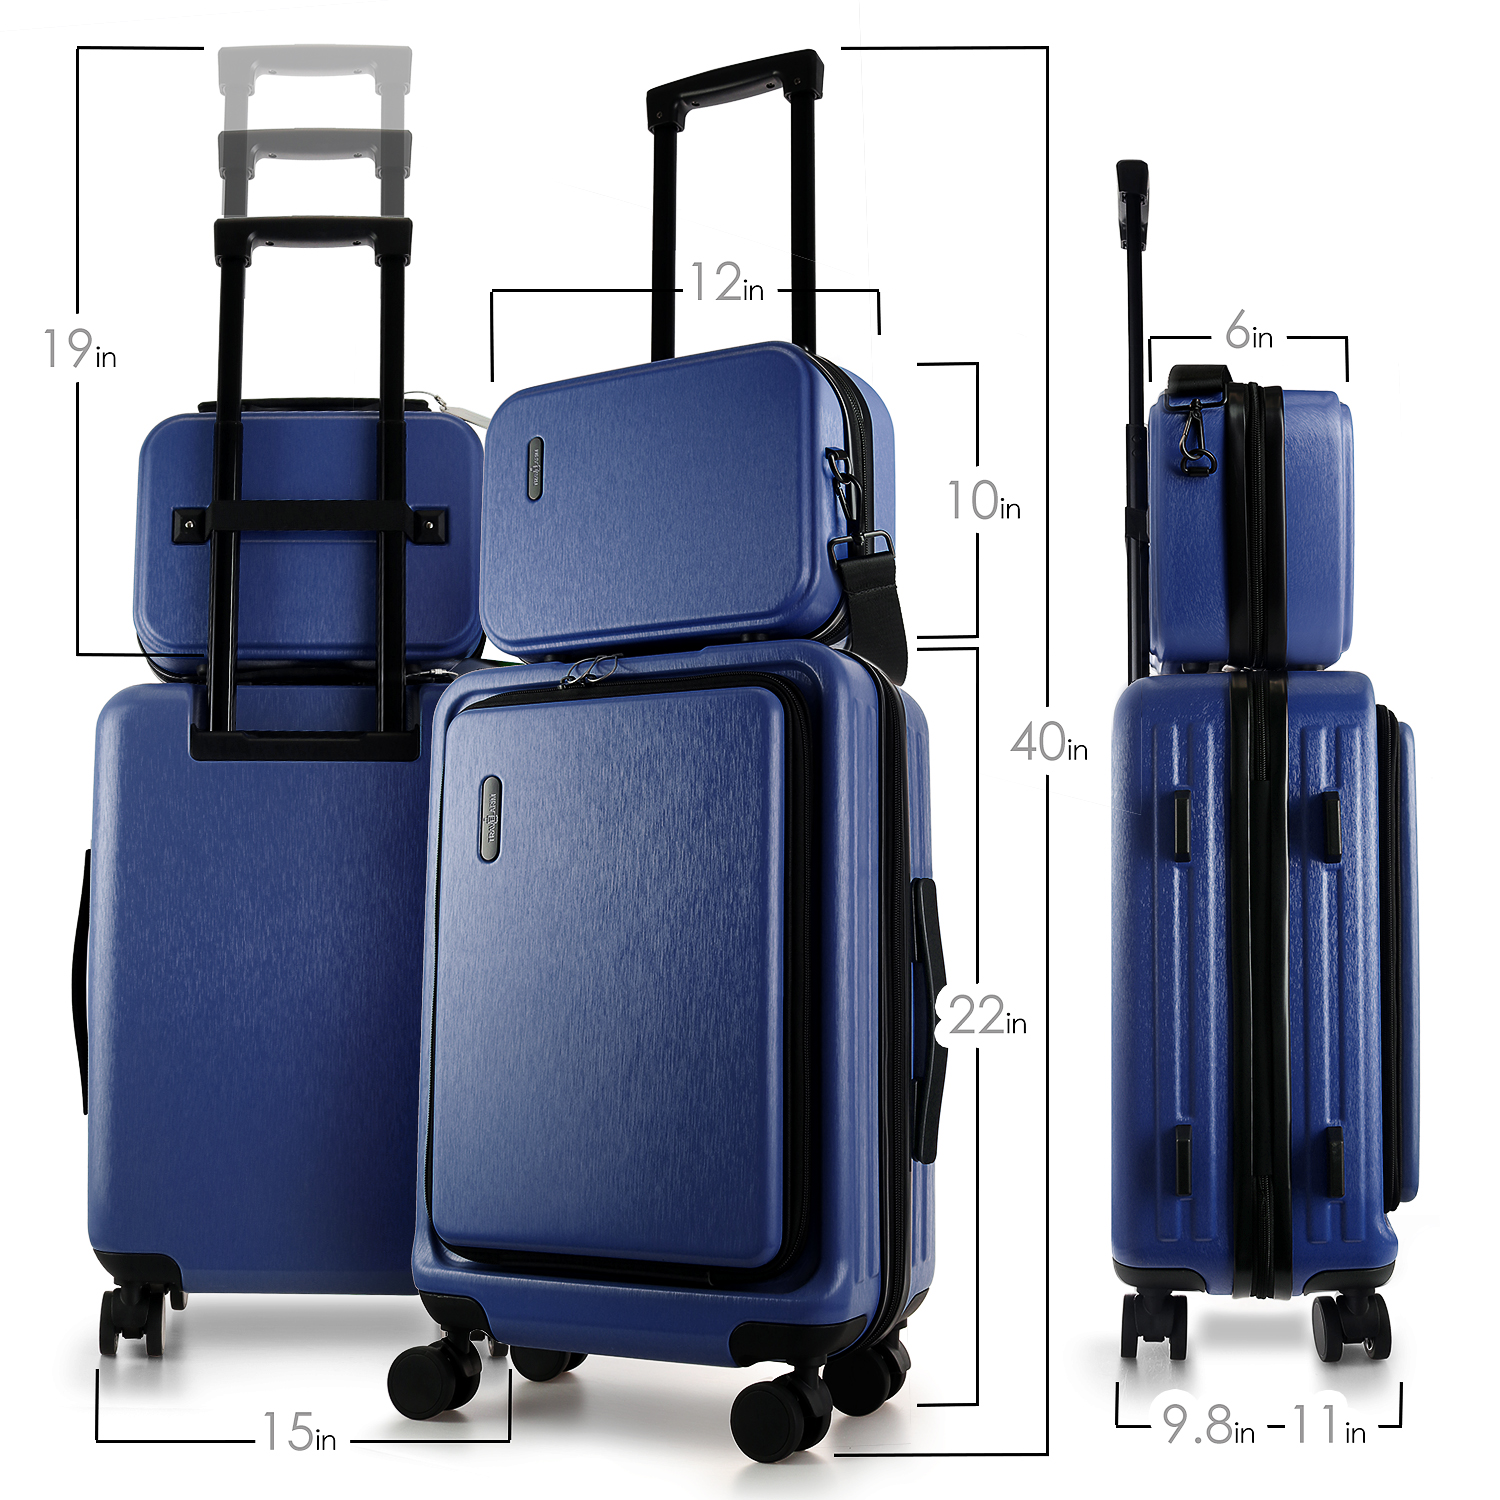 StorageBud 20 inch Hardside Carry-On Expandable Luggage, Front Pocket Luggage Set Spinner Suitcase Set, Navy Blue - image 4 of 10